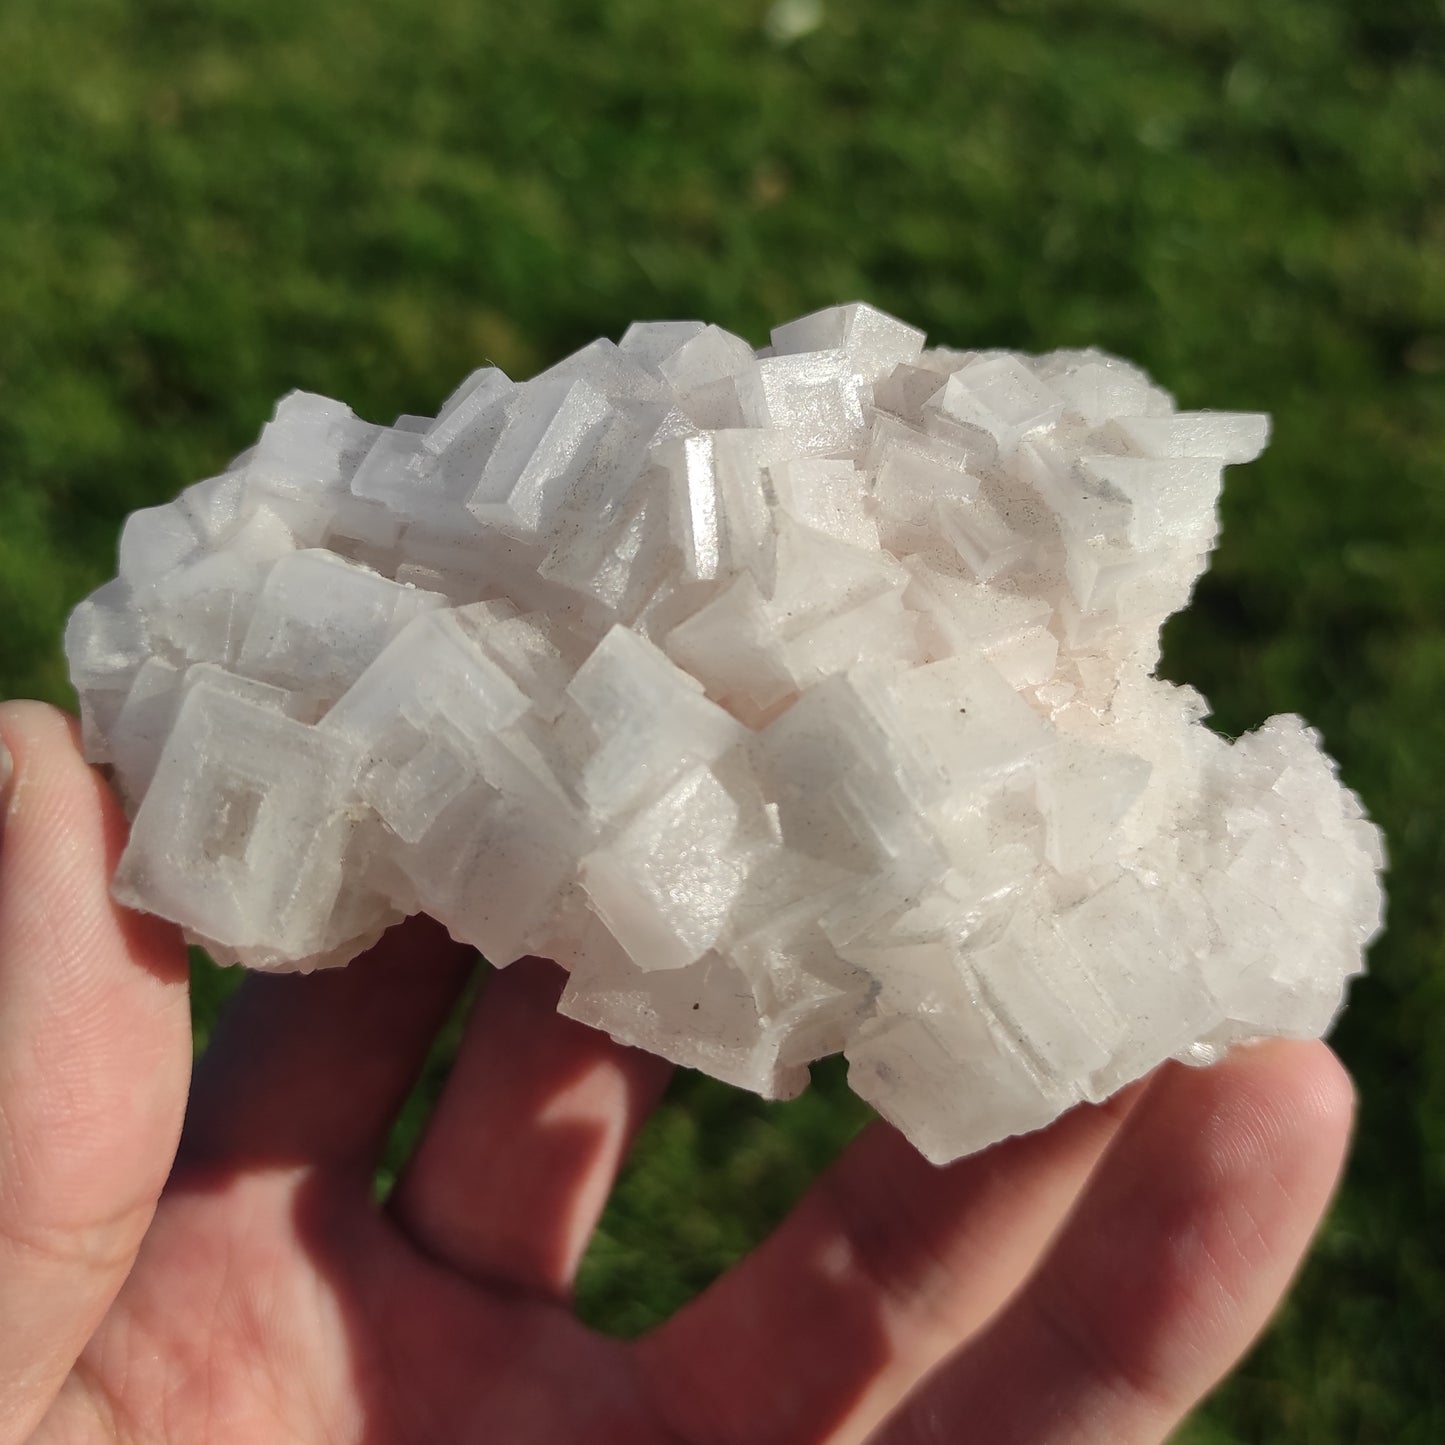 108g White Halite Salt from California